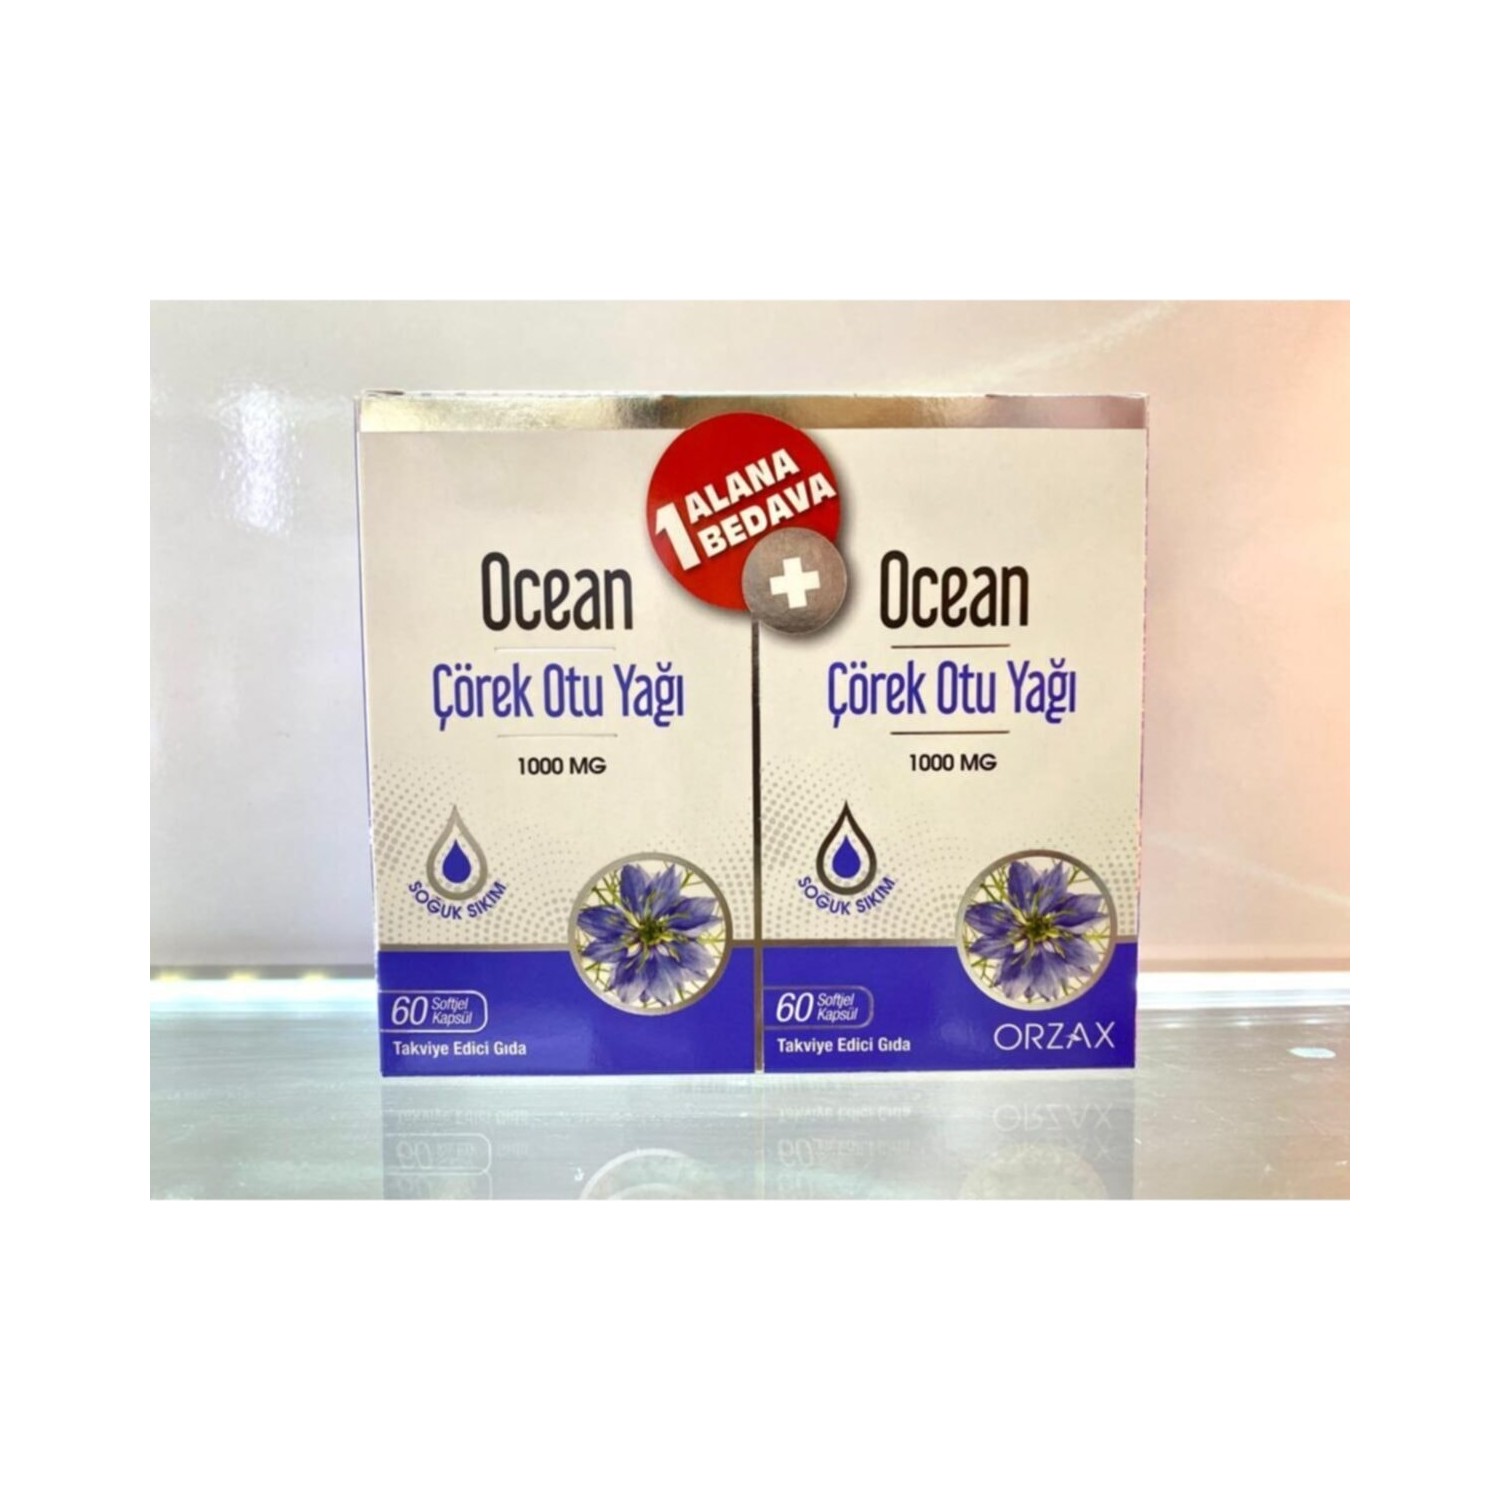 Масло черного тмина Orzax Ocean 1000 мг, 2 упаковки по 60 капсул proper vvt black cumin seed oil 1000mg 90caps